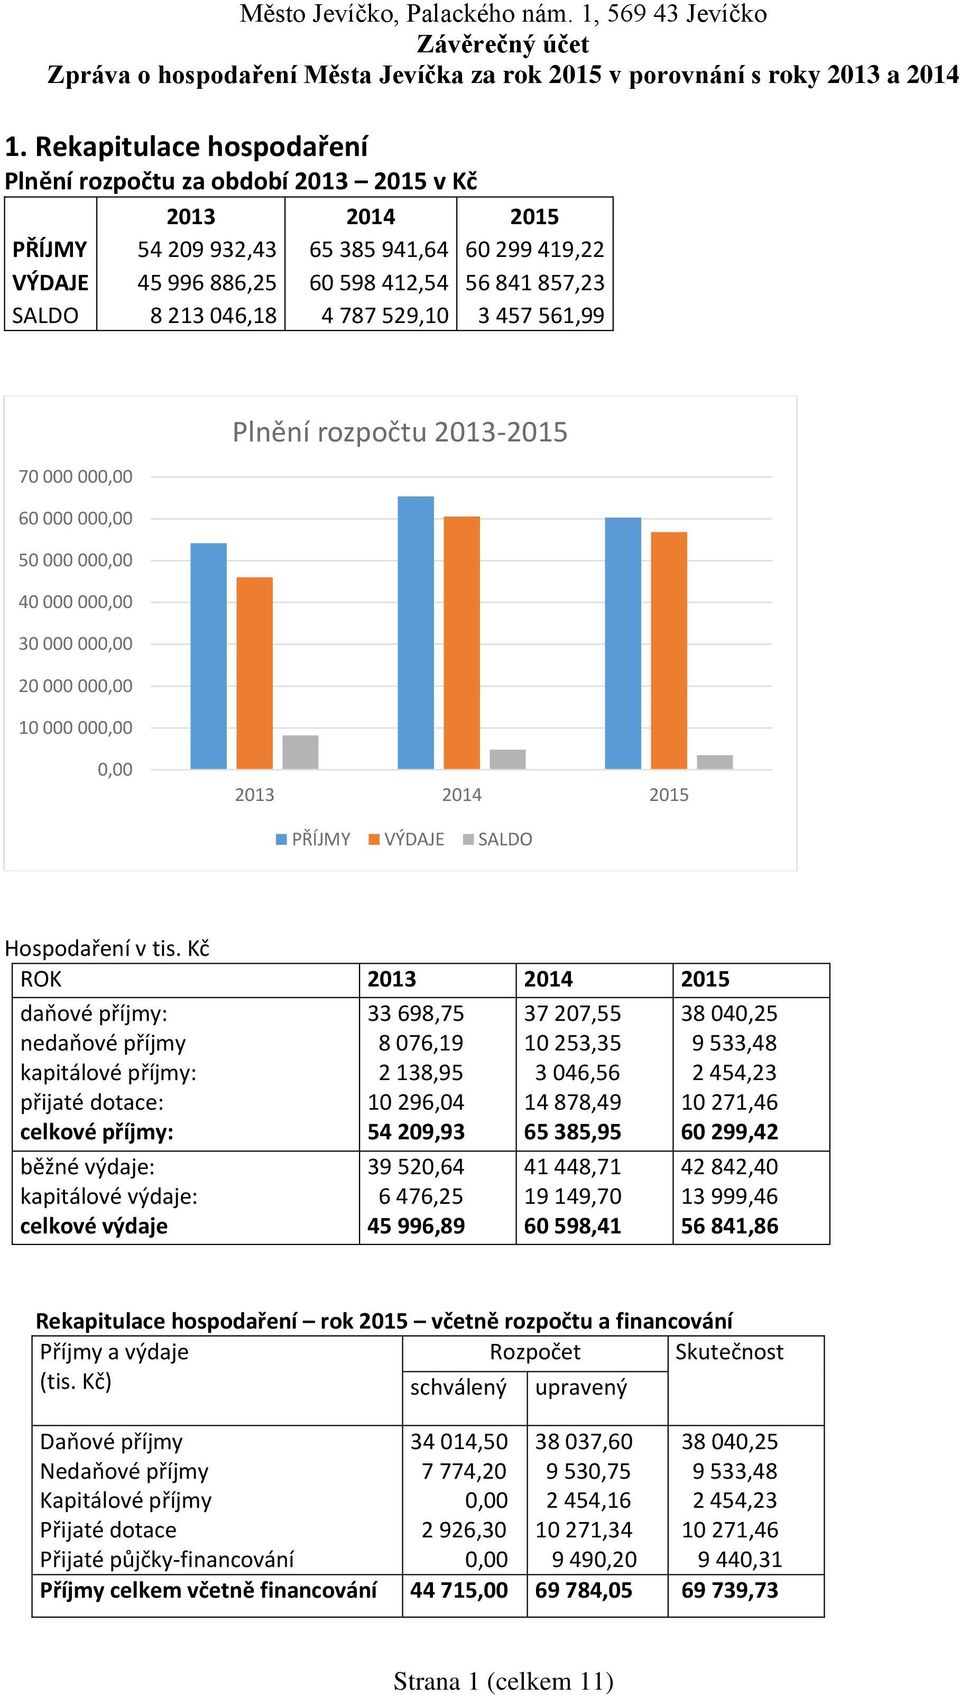 Kč ROK 2013 2014 2015 daňové příjmy: nedaňové příjmy kapitálové příjmy: přijaté dotace: celkové příjmy: běžné výdaje: kapitálové výdaje: celkové výdaje 33 698,75 8 076,19 2 138,95 10 296,04 54 209,93